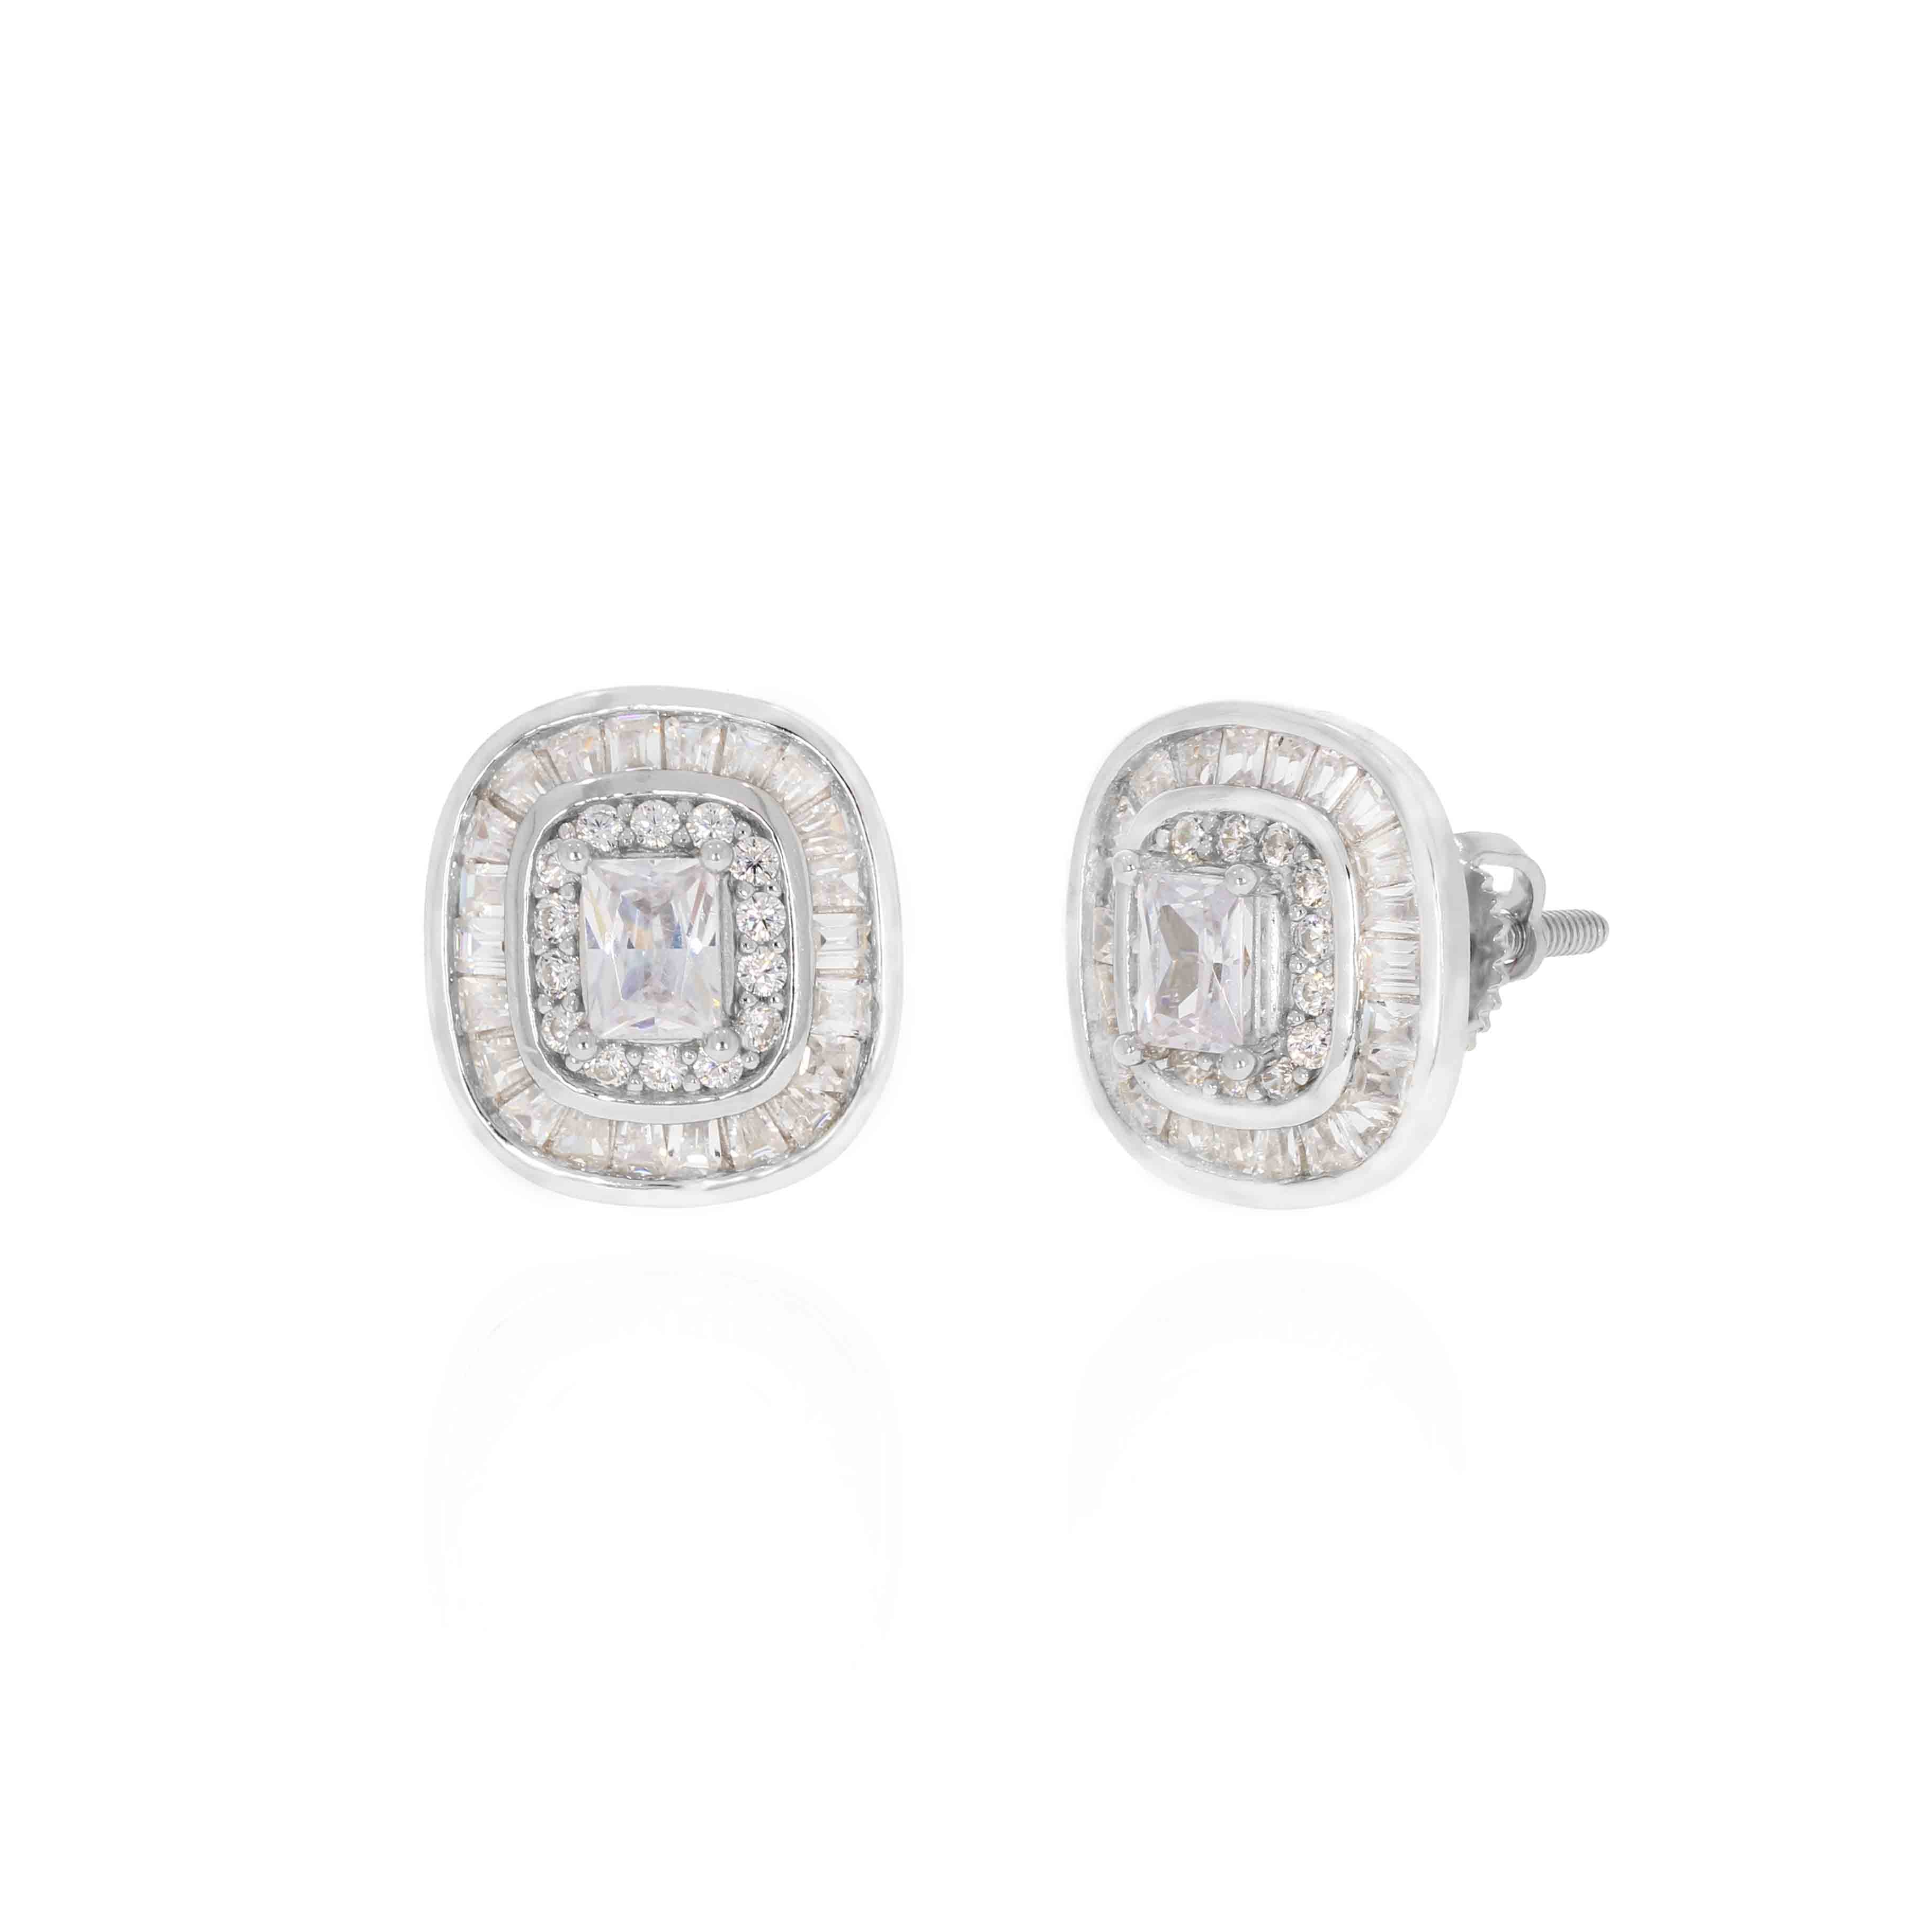 Intricated Bezel Diamond Stud Earrings